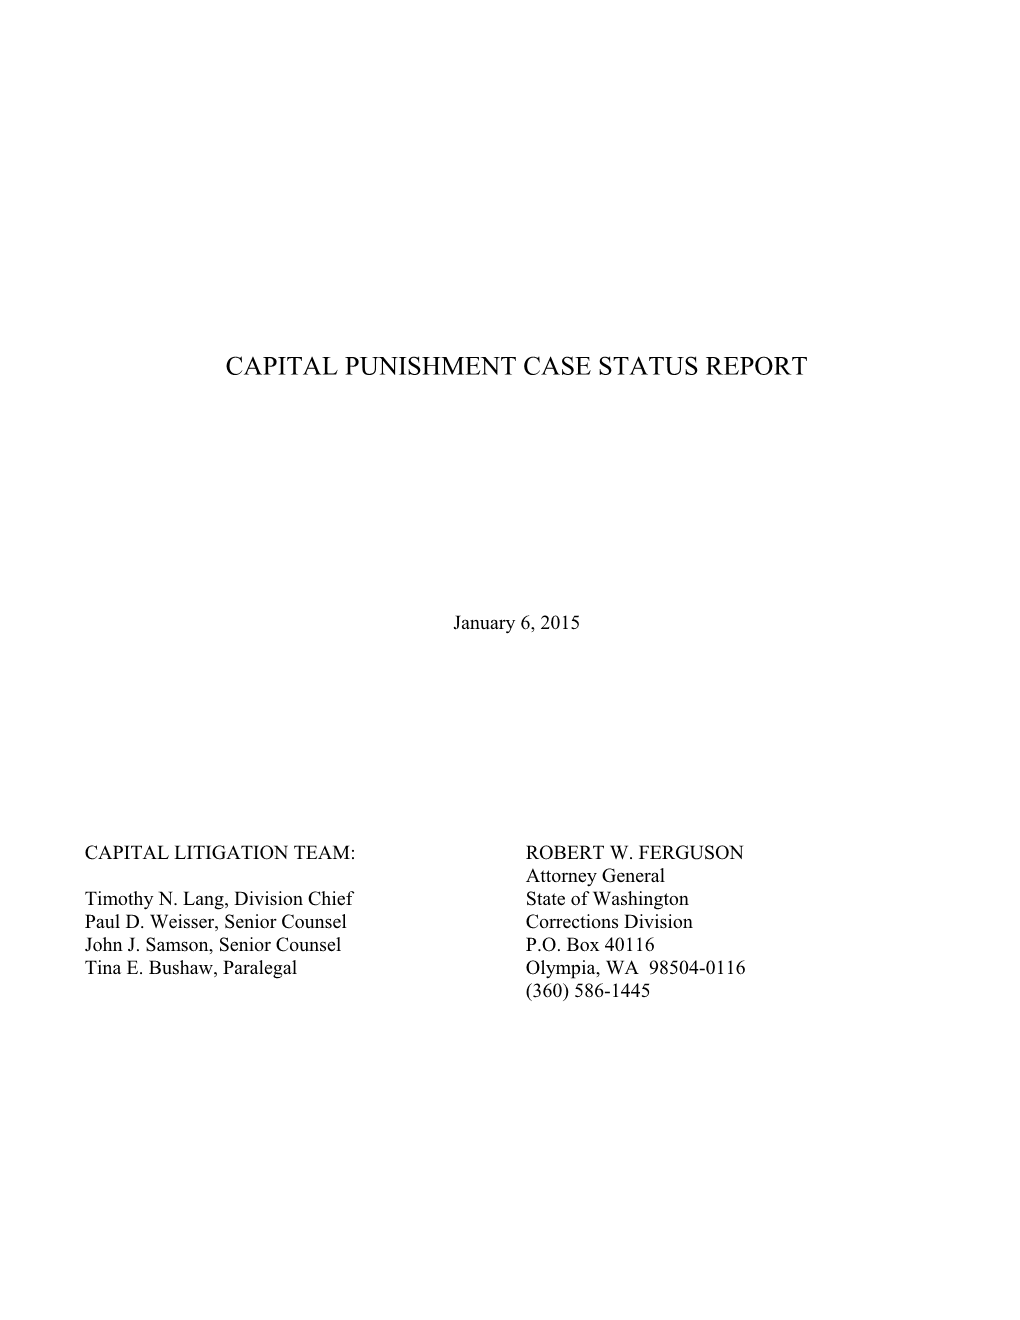 Capital Punishment Case Status Report